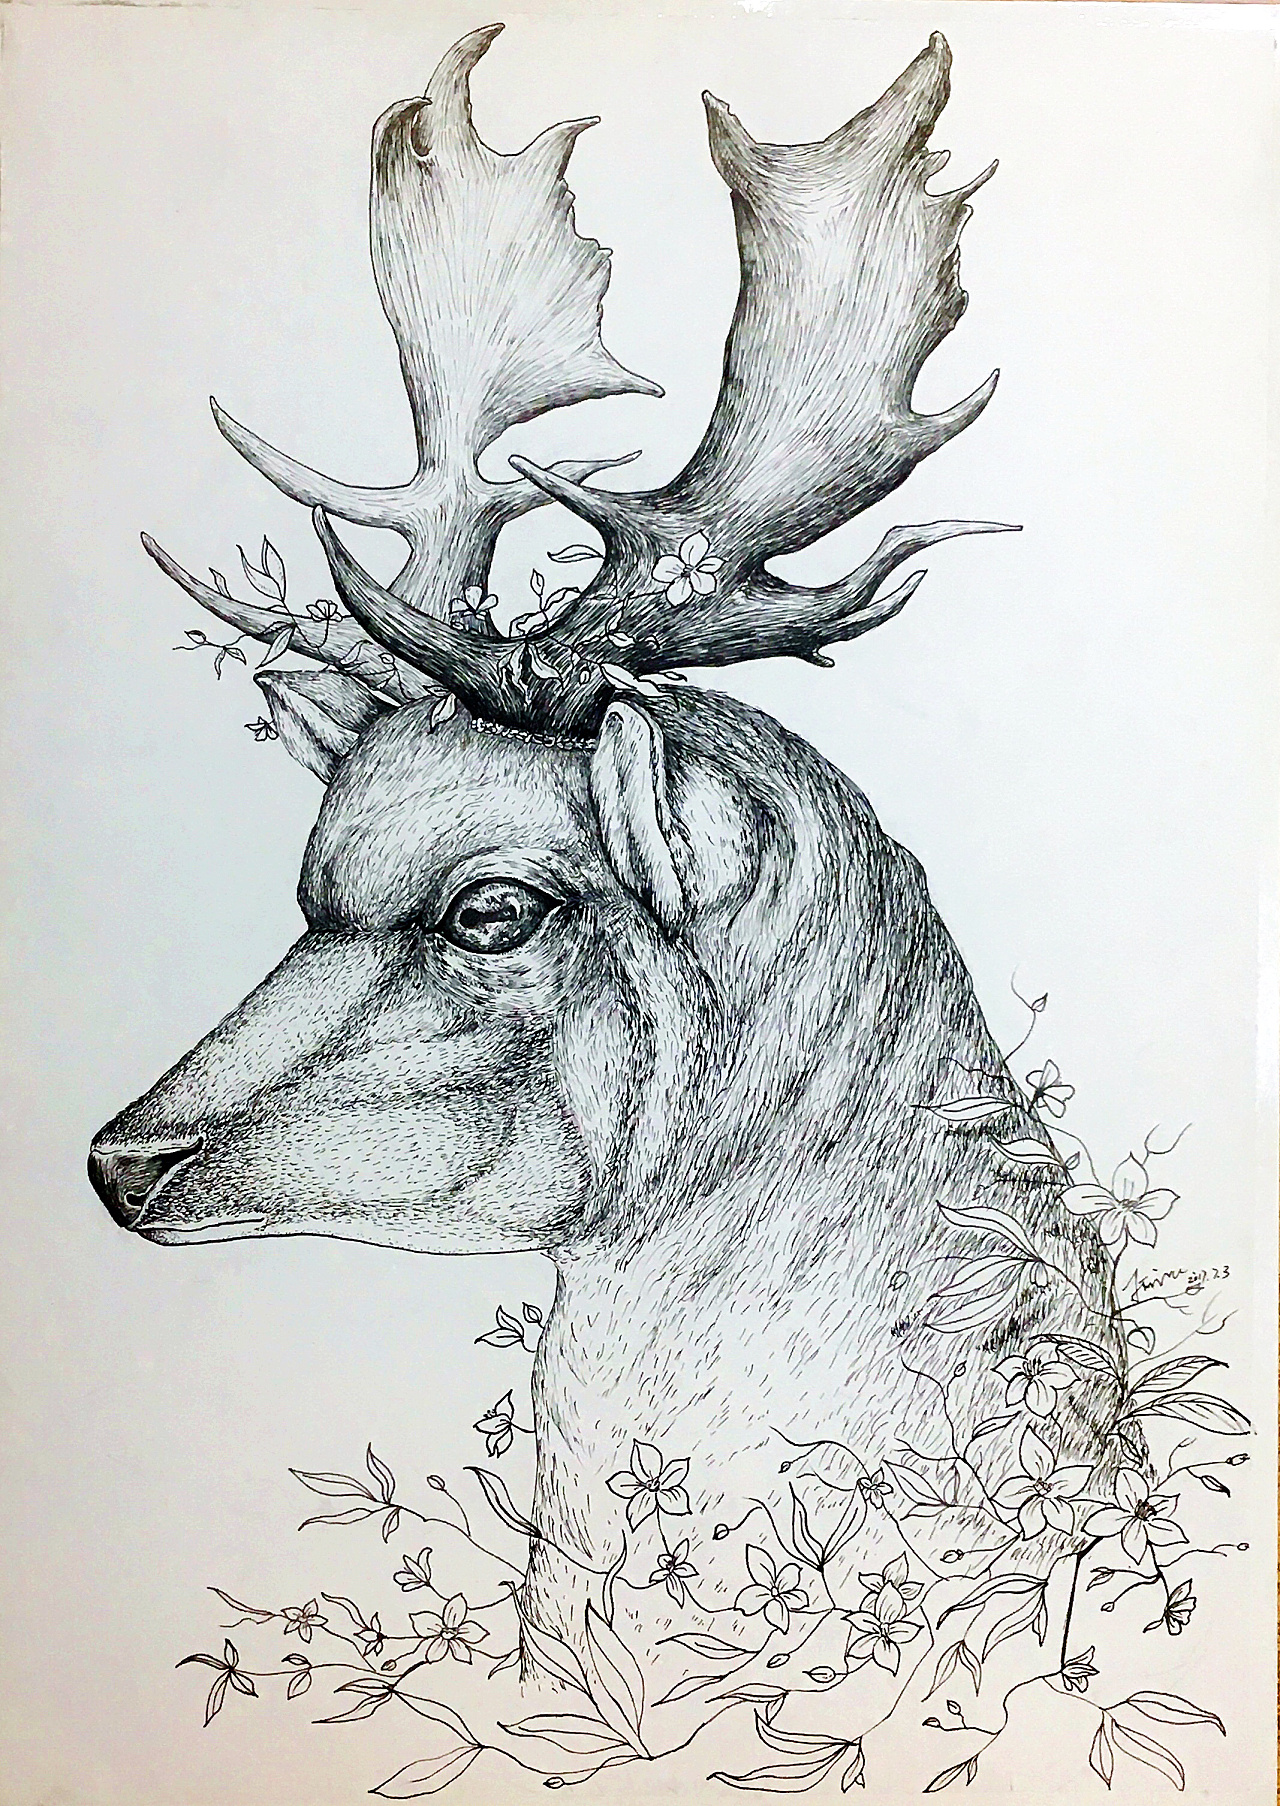 鹿的素描简笔图片